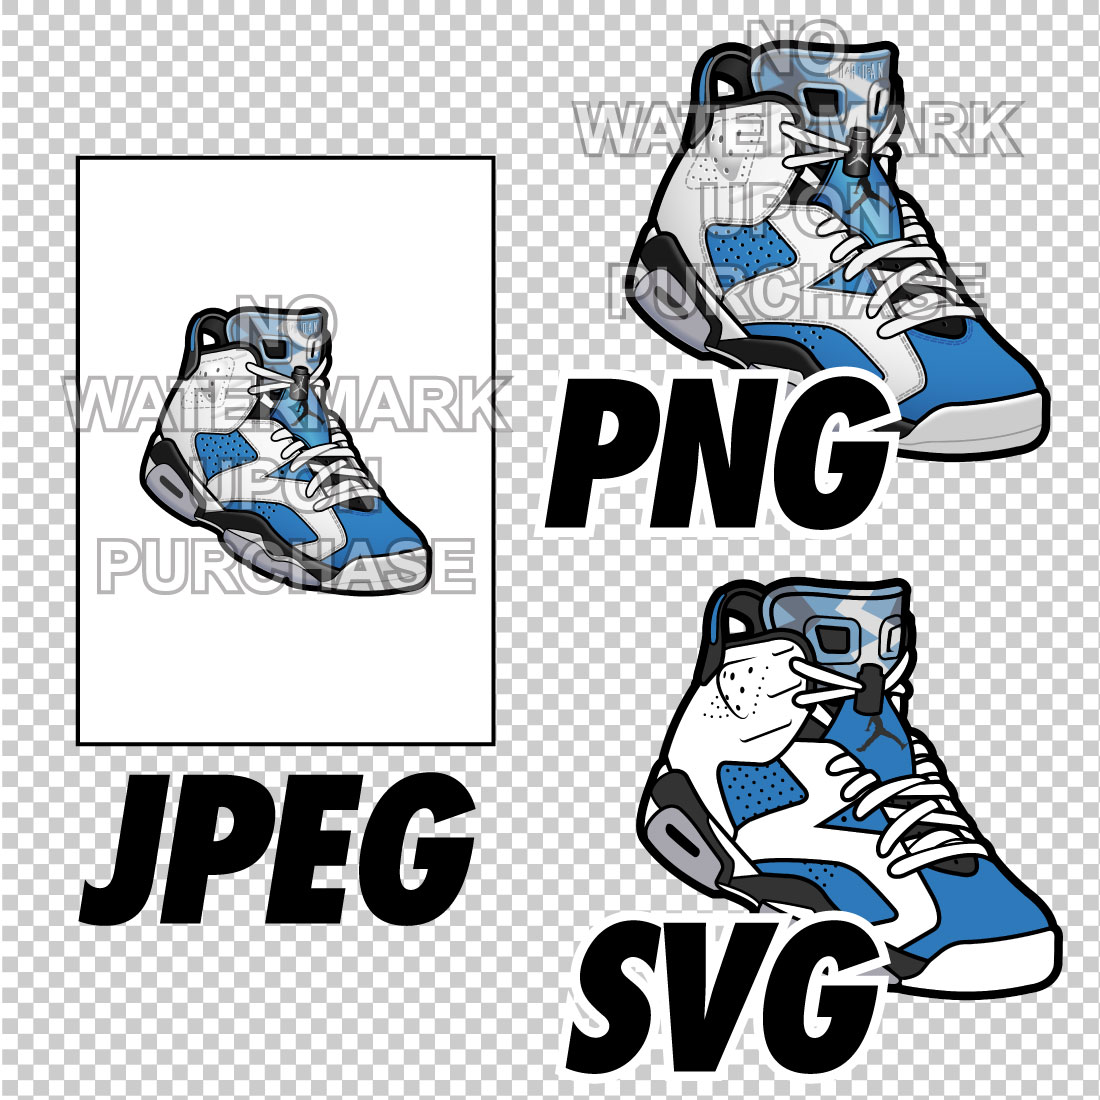 Air Jordan 6 White UNC JPEG PNG SVG right & left shoe bundle preview image.